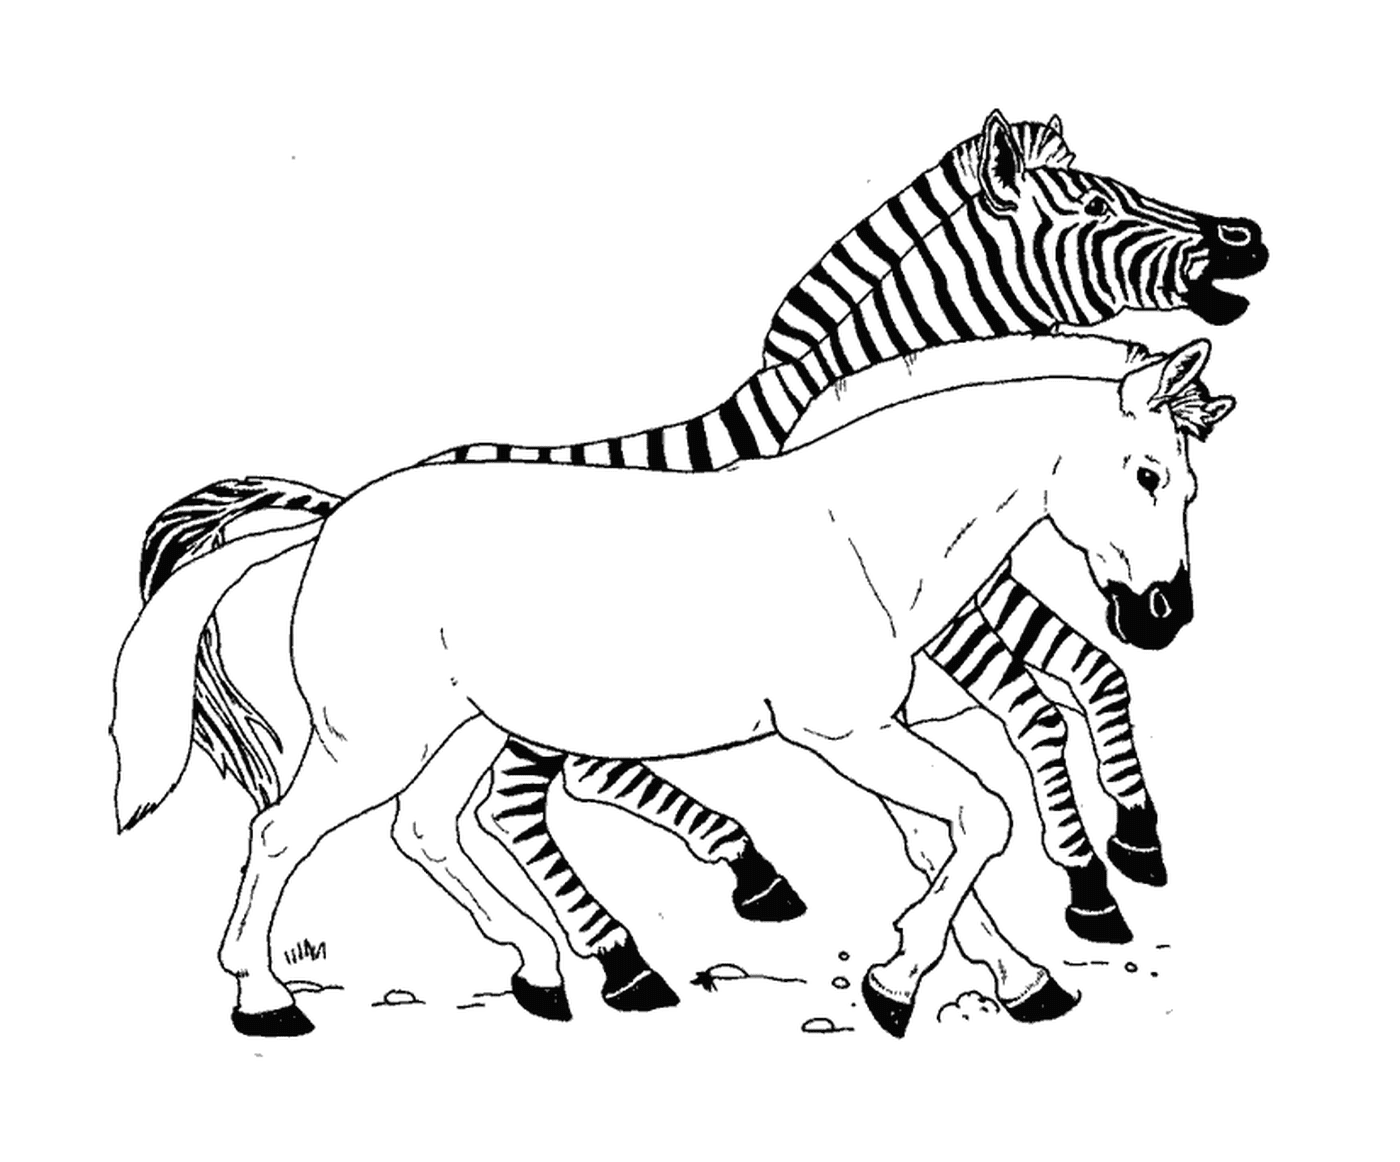  Verrückte Rasse zwischen Zebras 